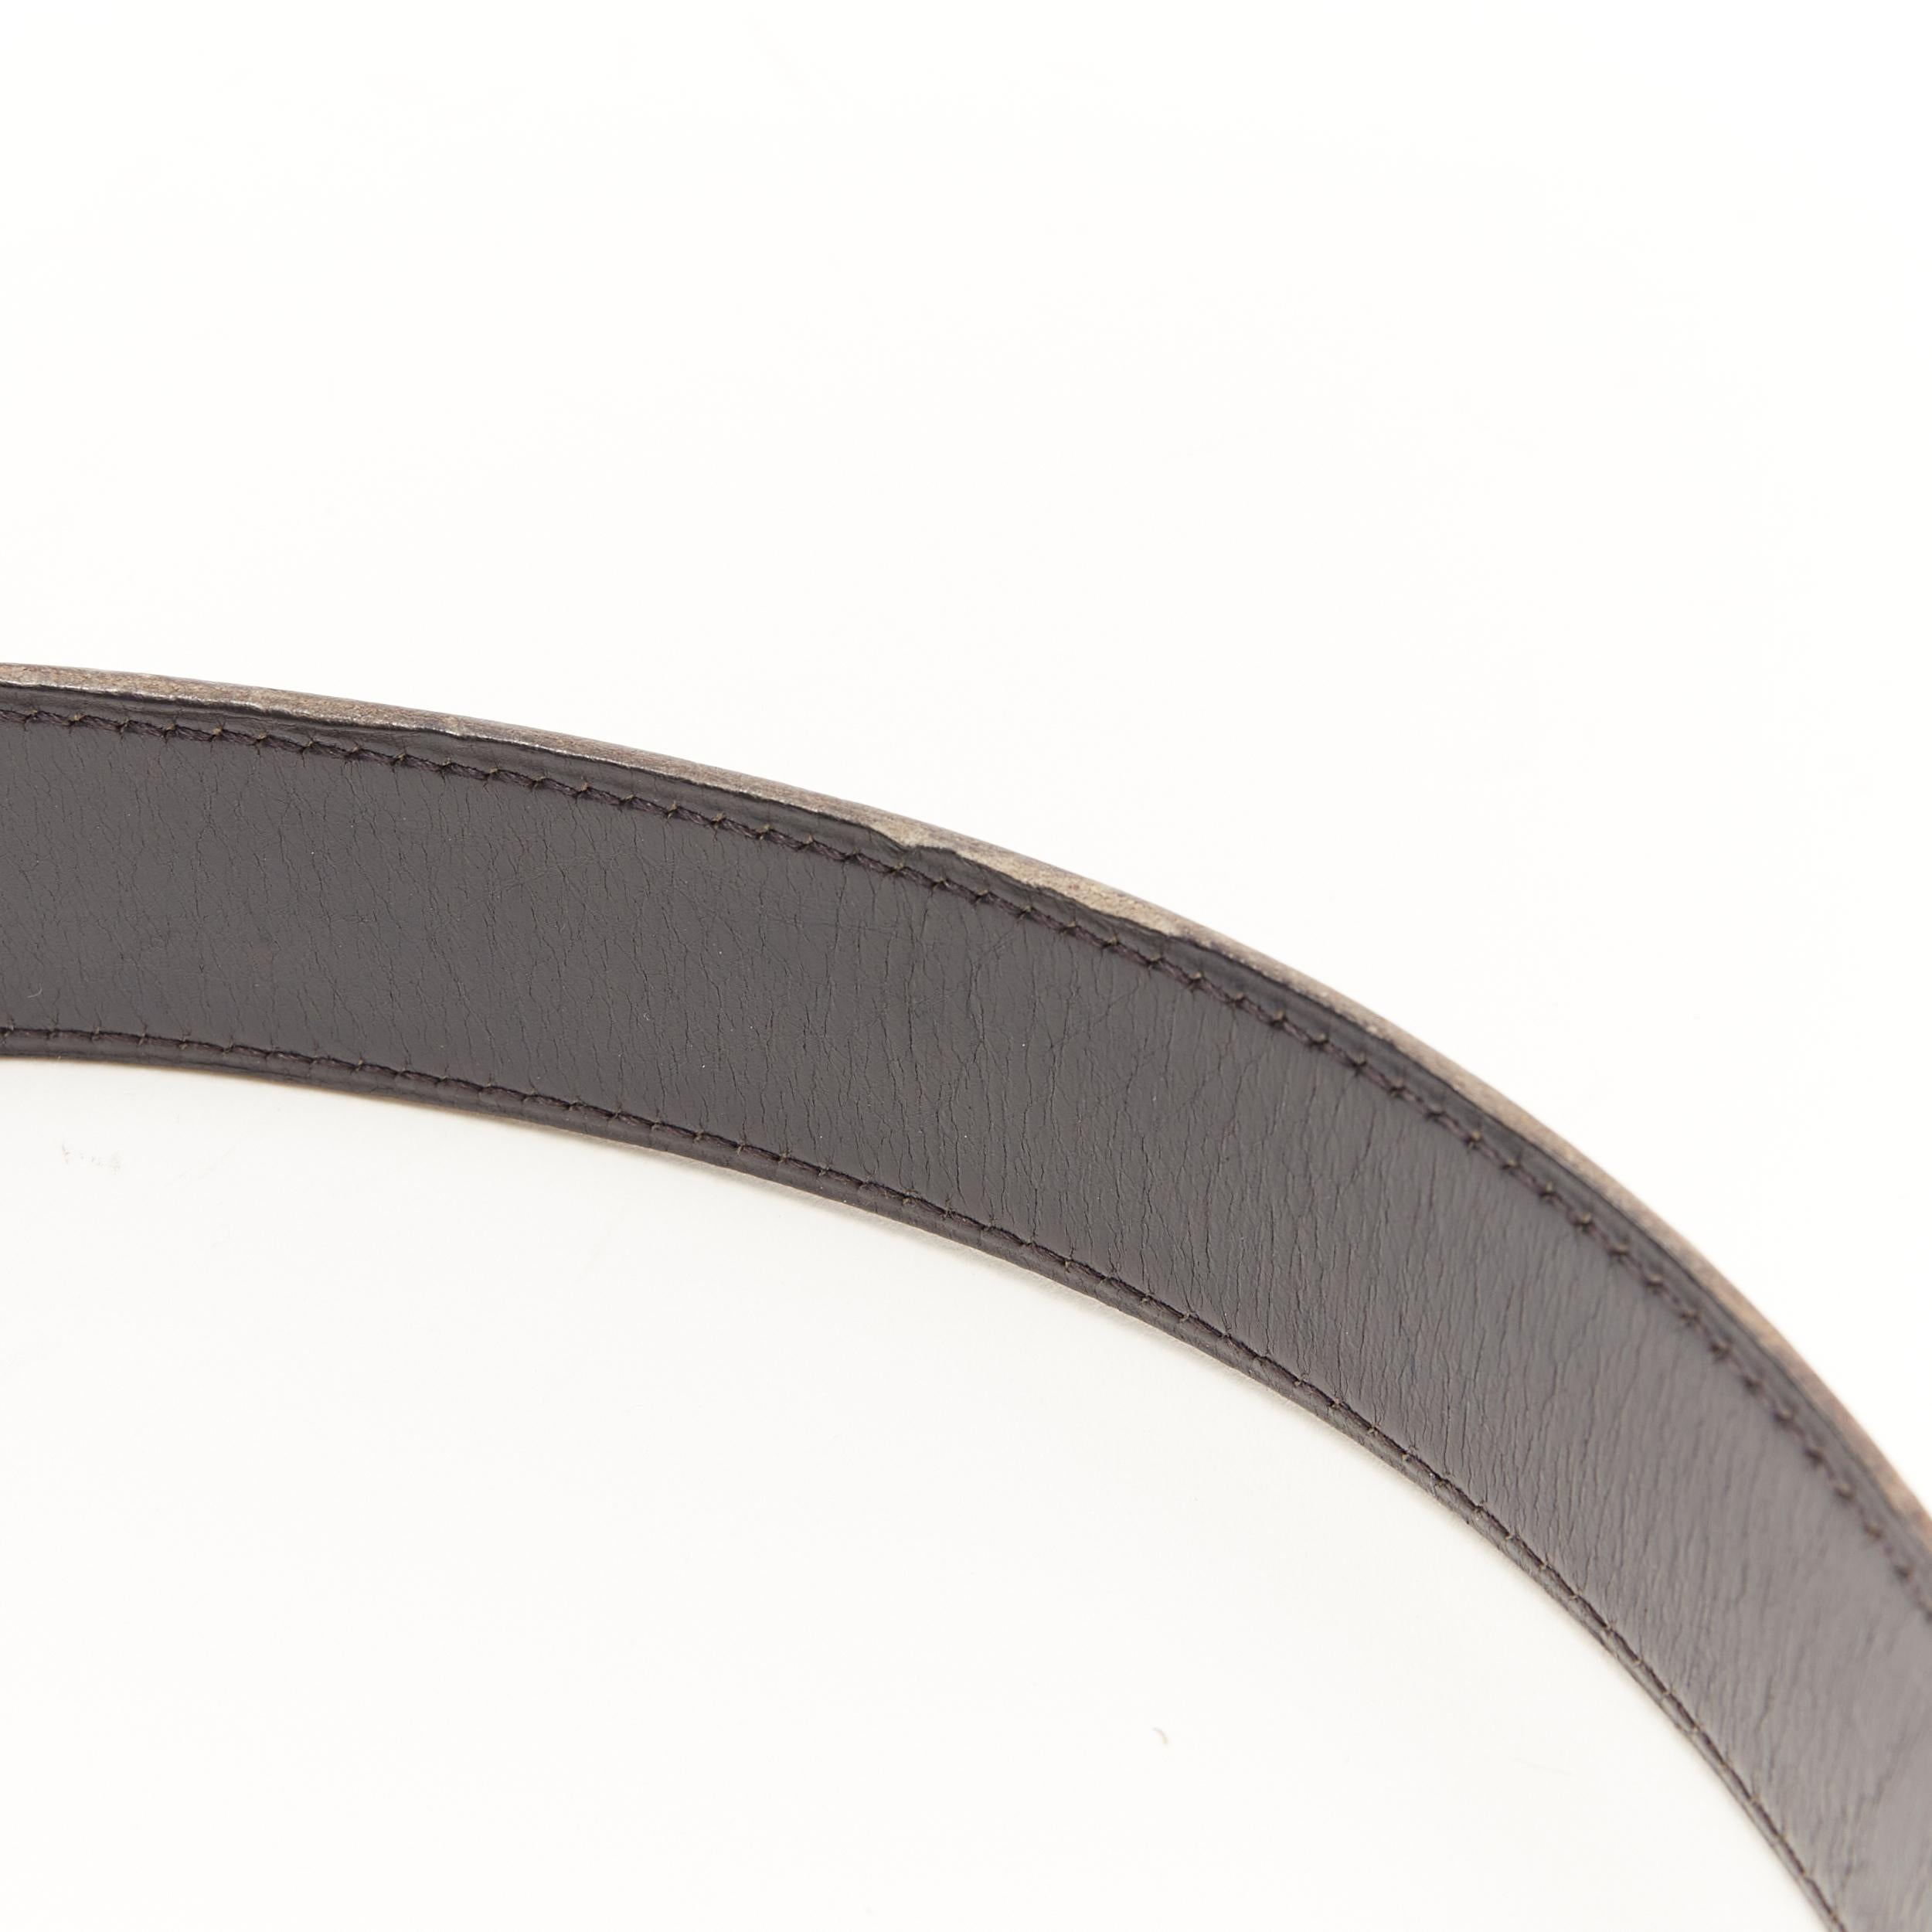 HERMES black leather hammered gold-tone H metal buckle leather belt FR 70 1